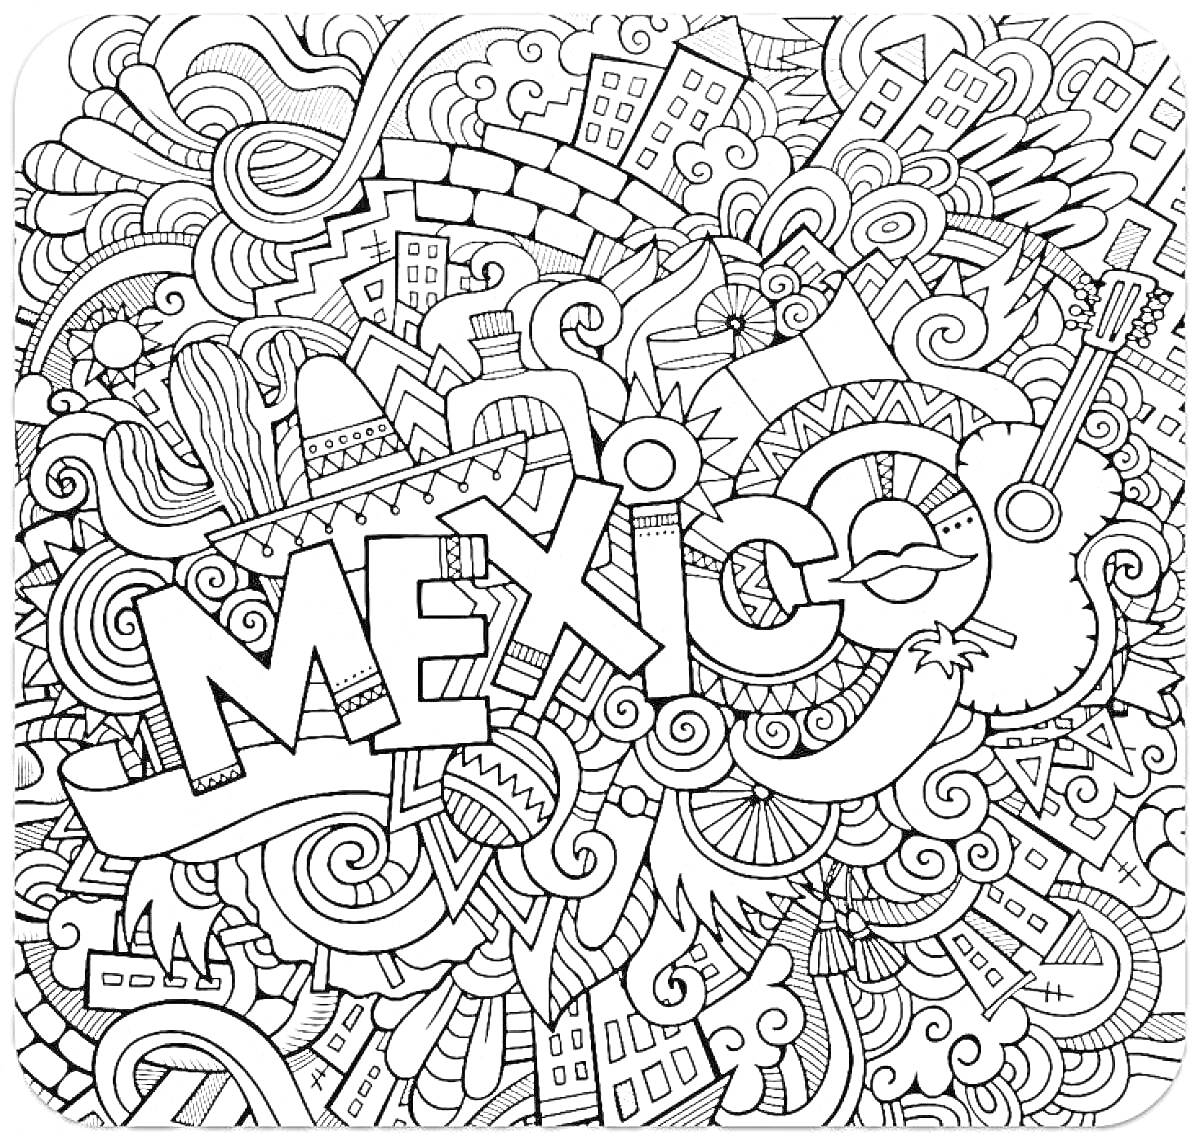 Раскраска MEXICO с мексиканскими символами, зданиями, гитарой и шляпой